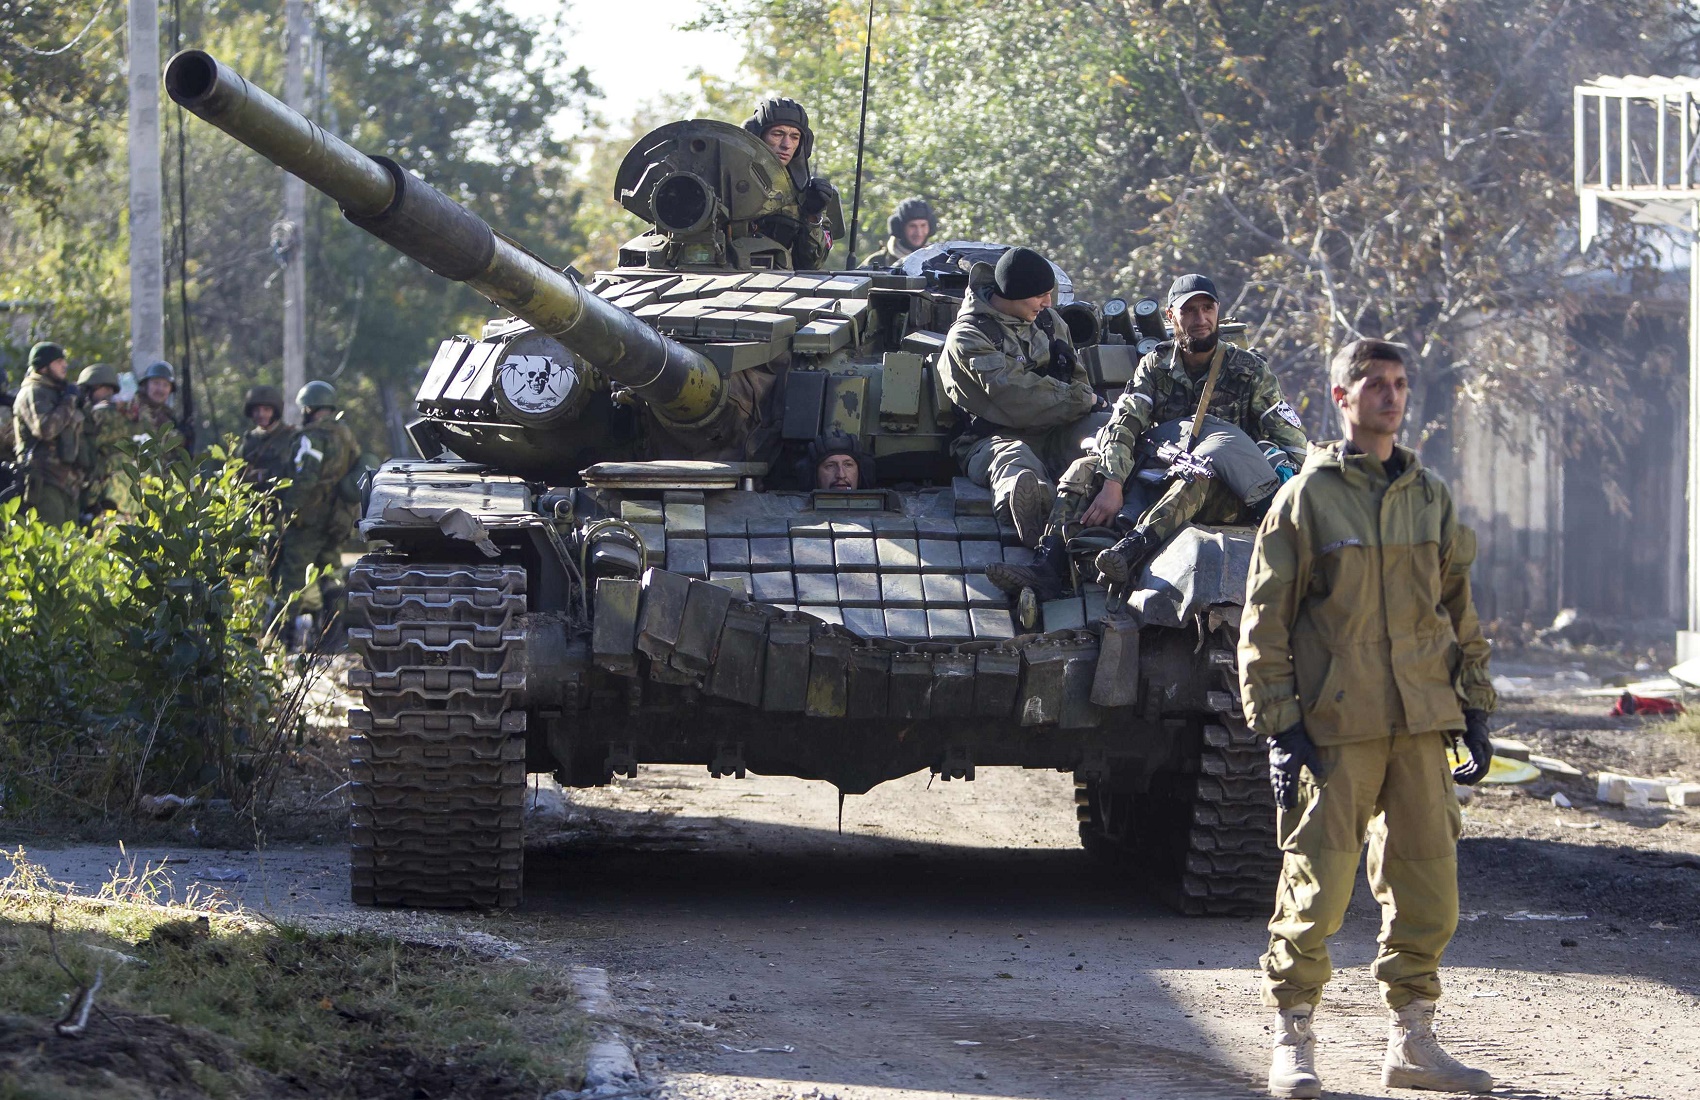 В Минобороны ответили на готовность России поставлять оружие на Донбасс